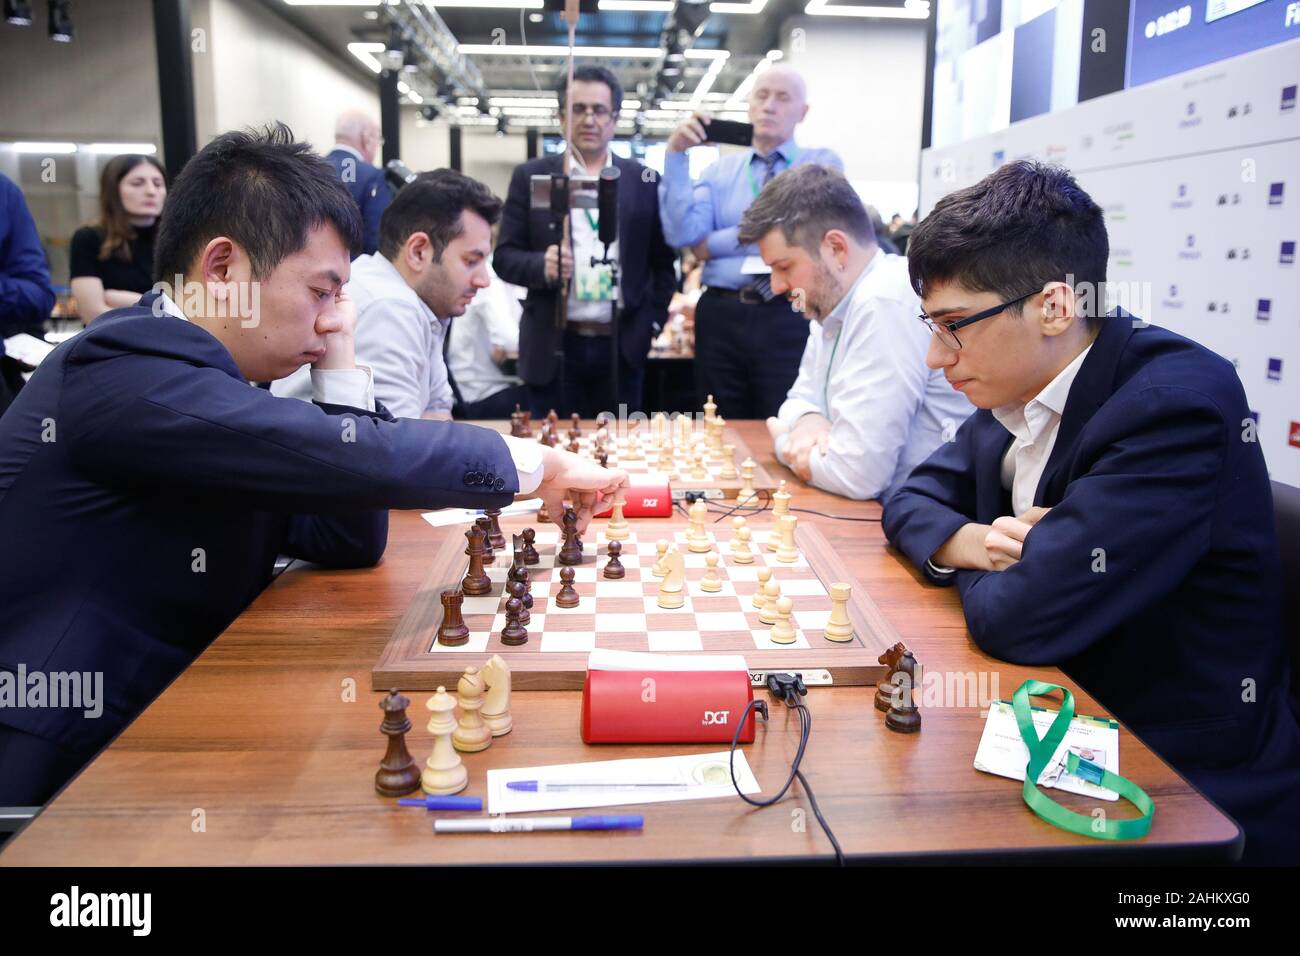 Alireza Firouzja vs Magnus Carlsen (2019)